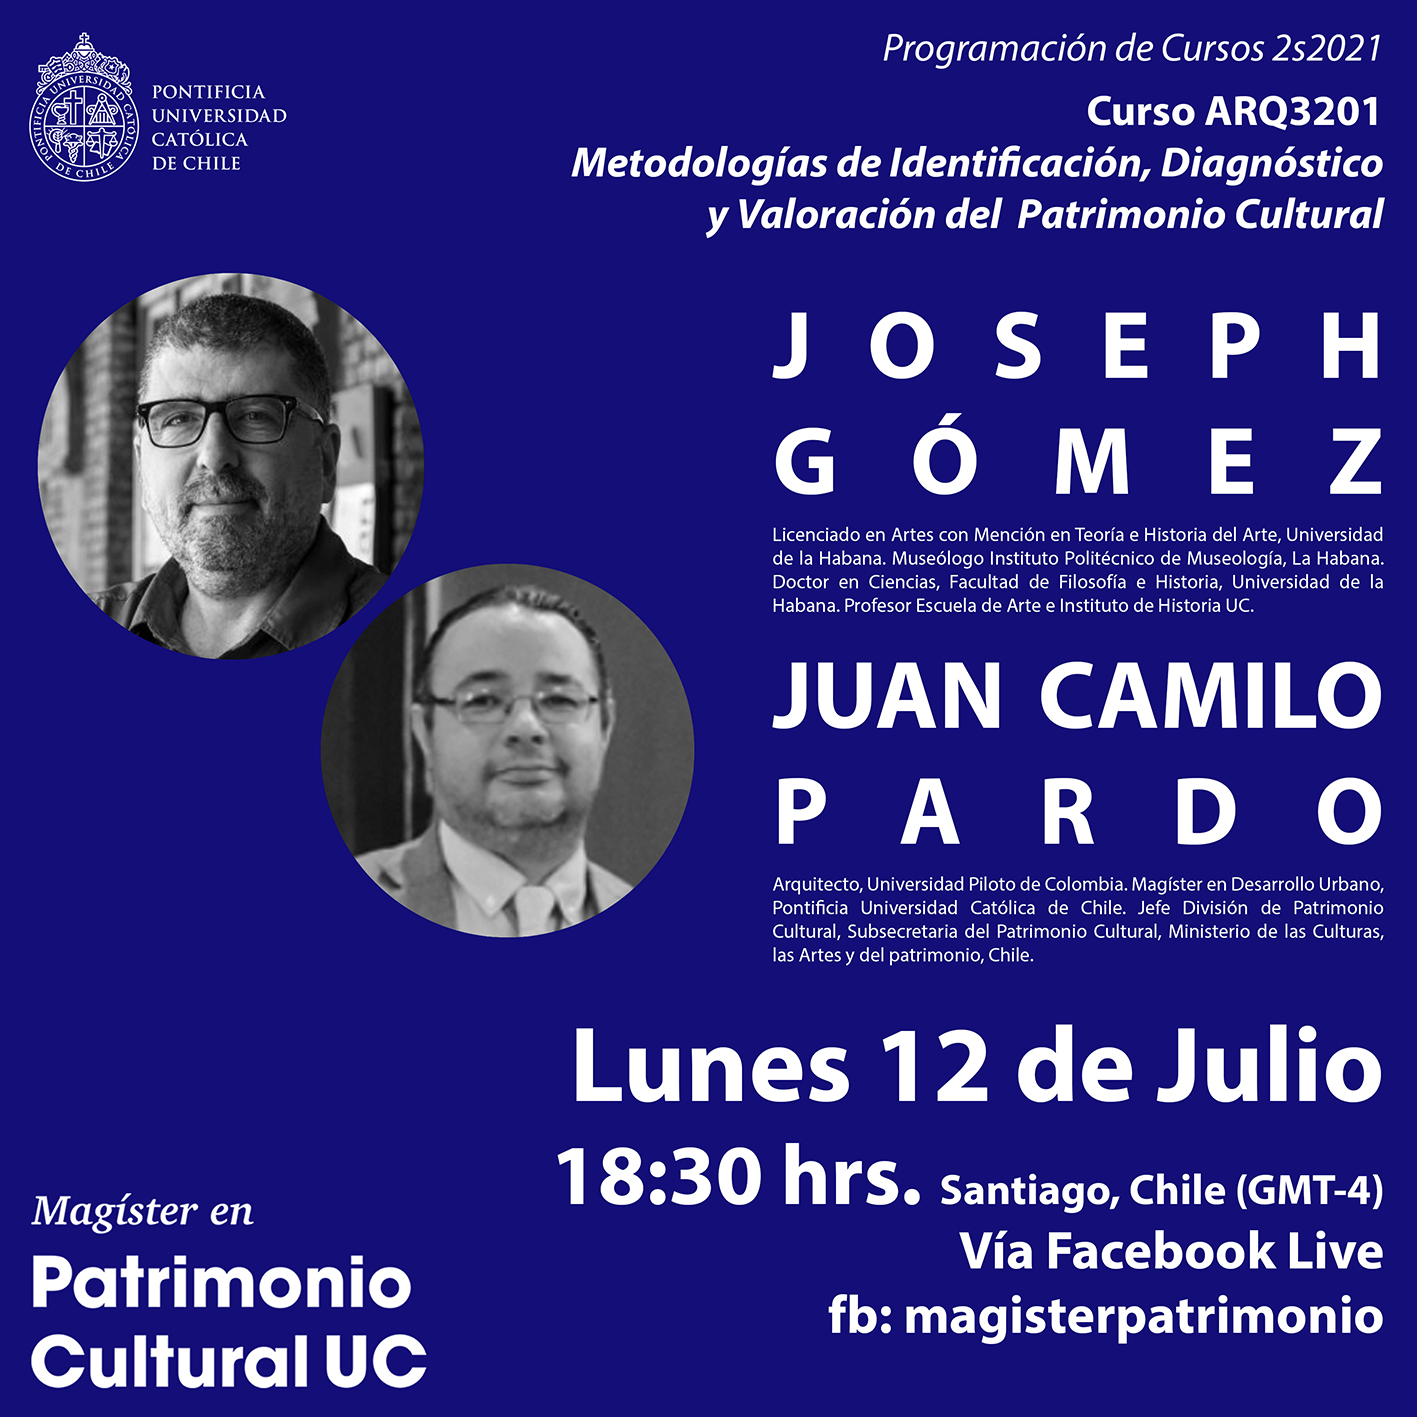 Live Instagram Promoción Cursos 2s2021 rrssJGJCP